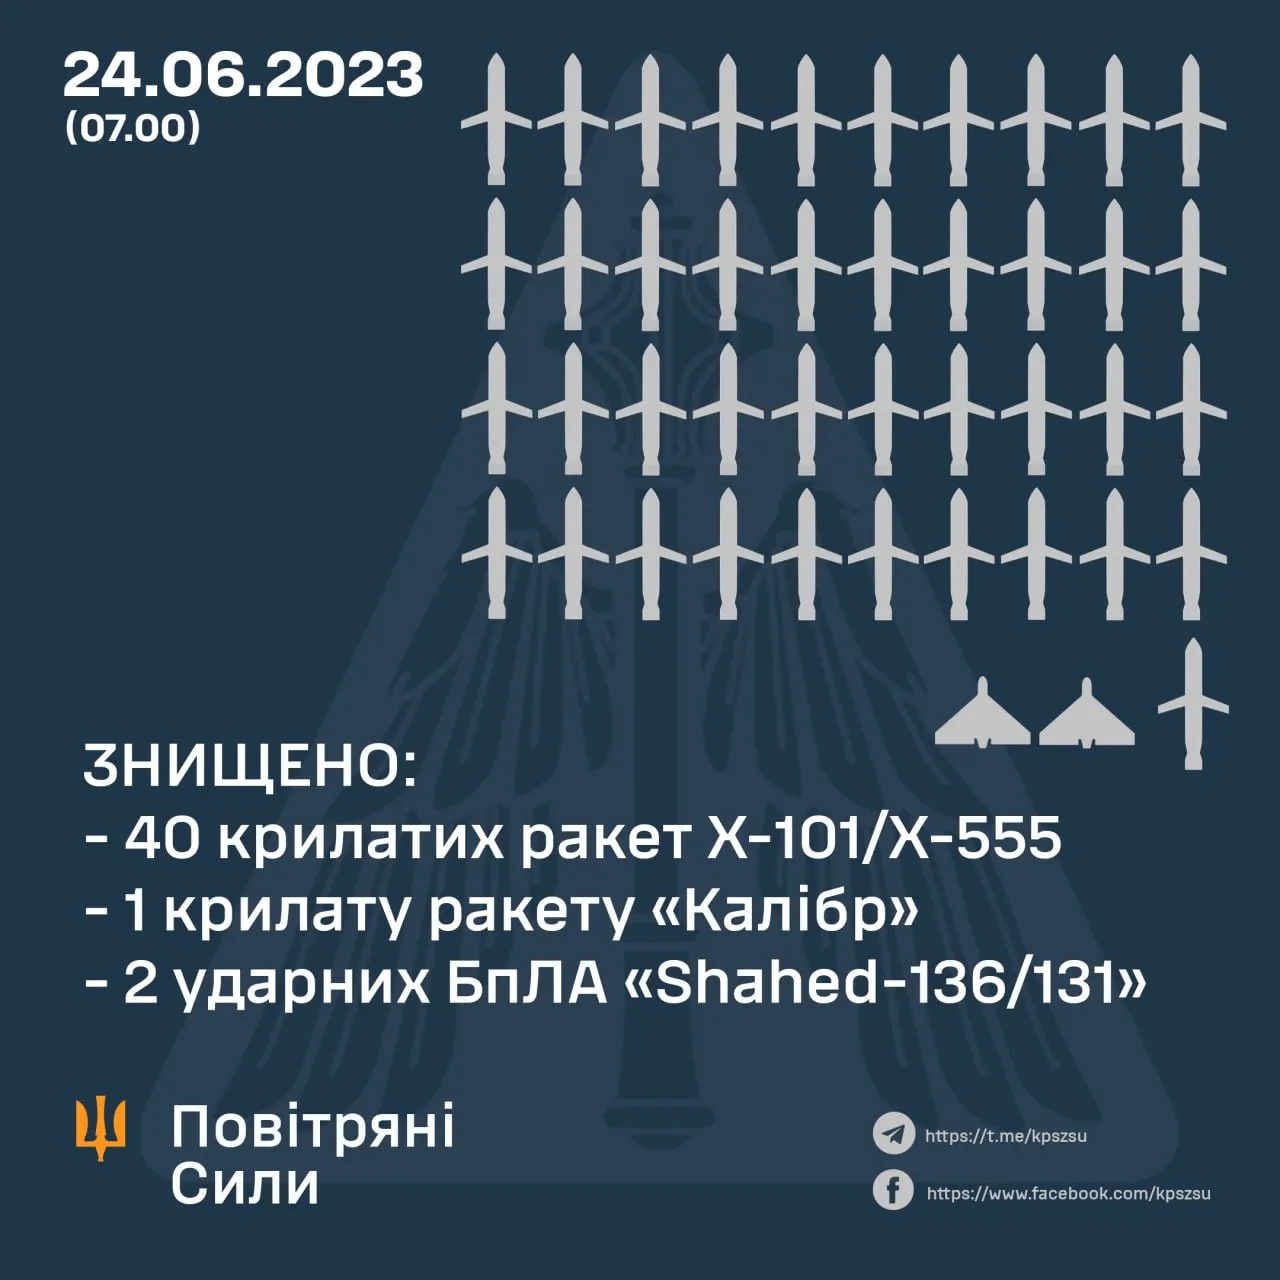 Скільки ракет вдалося збити під час атаки 24 червня